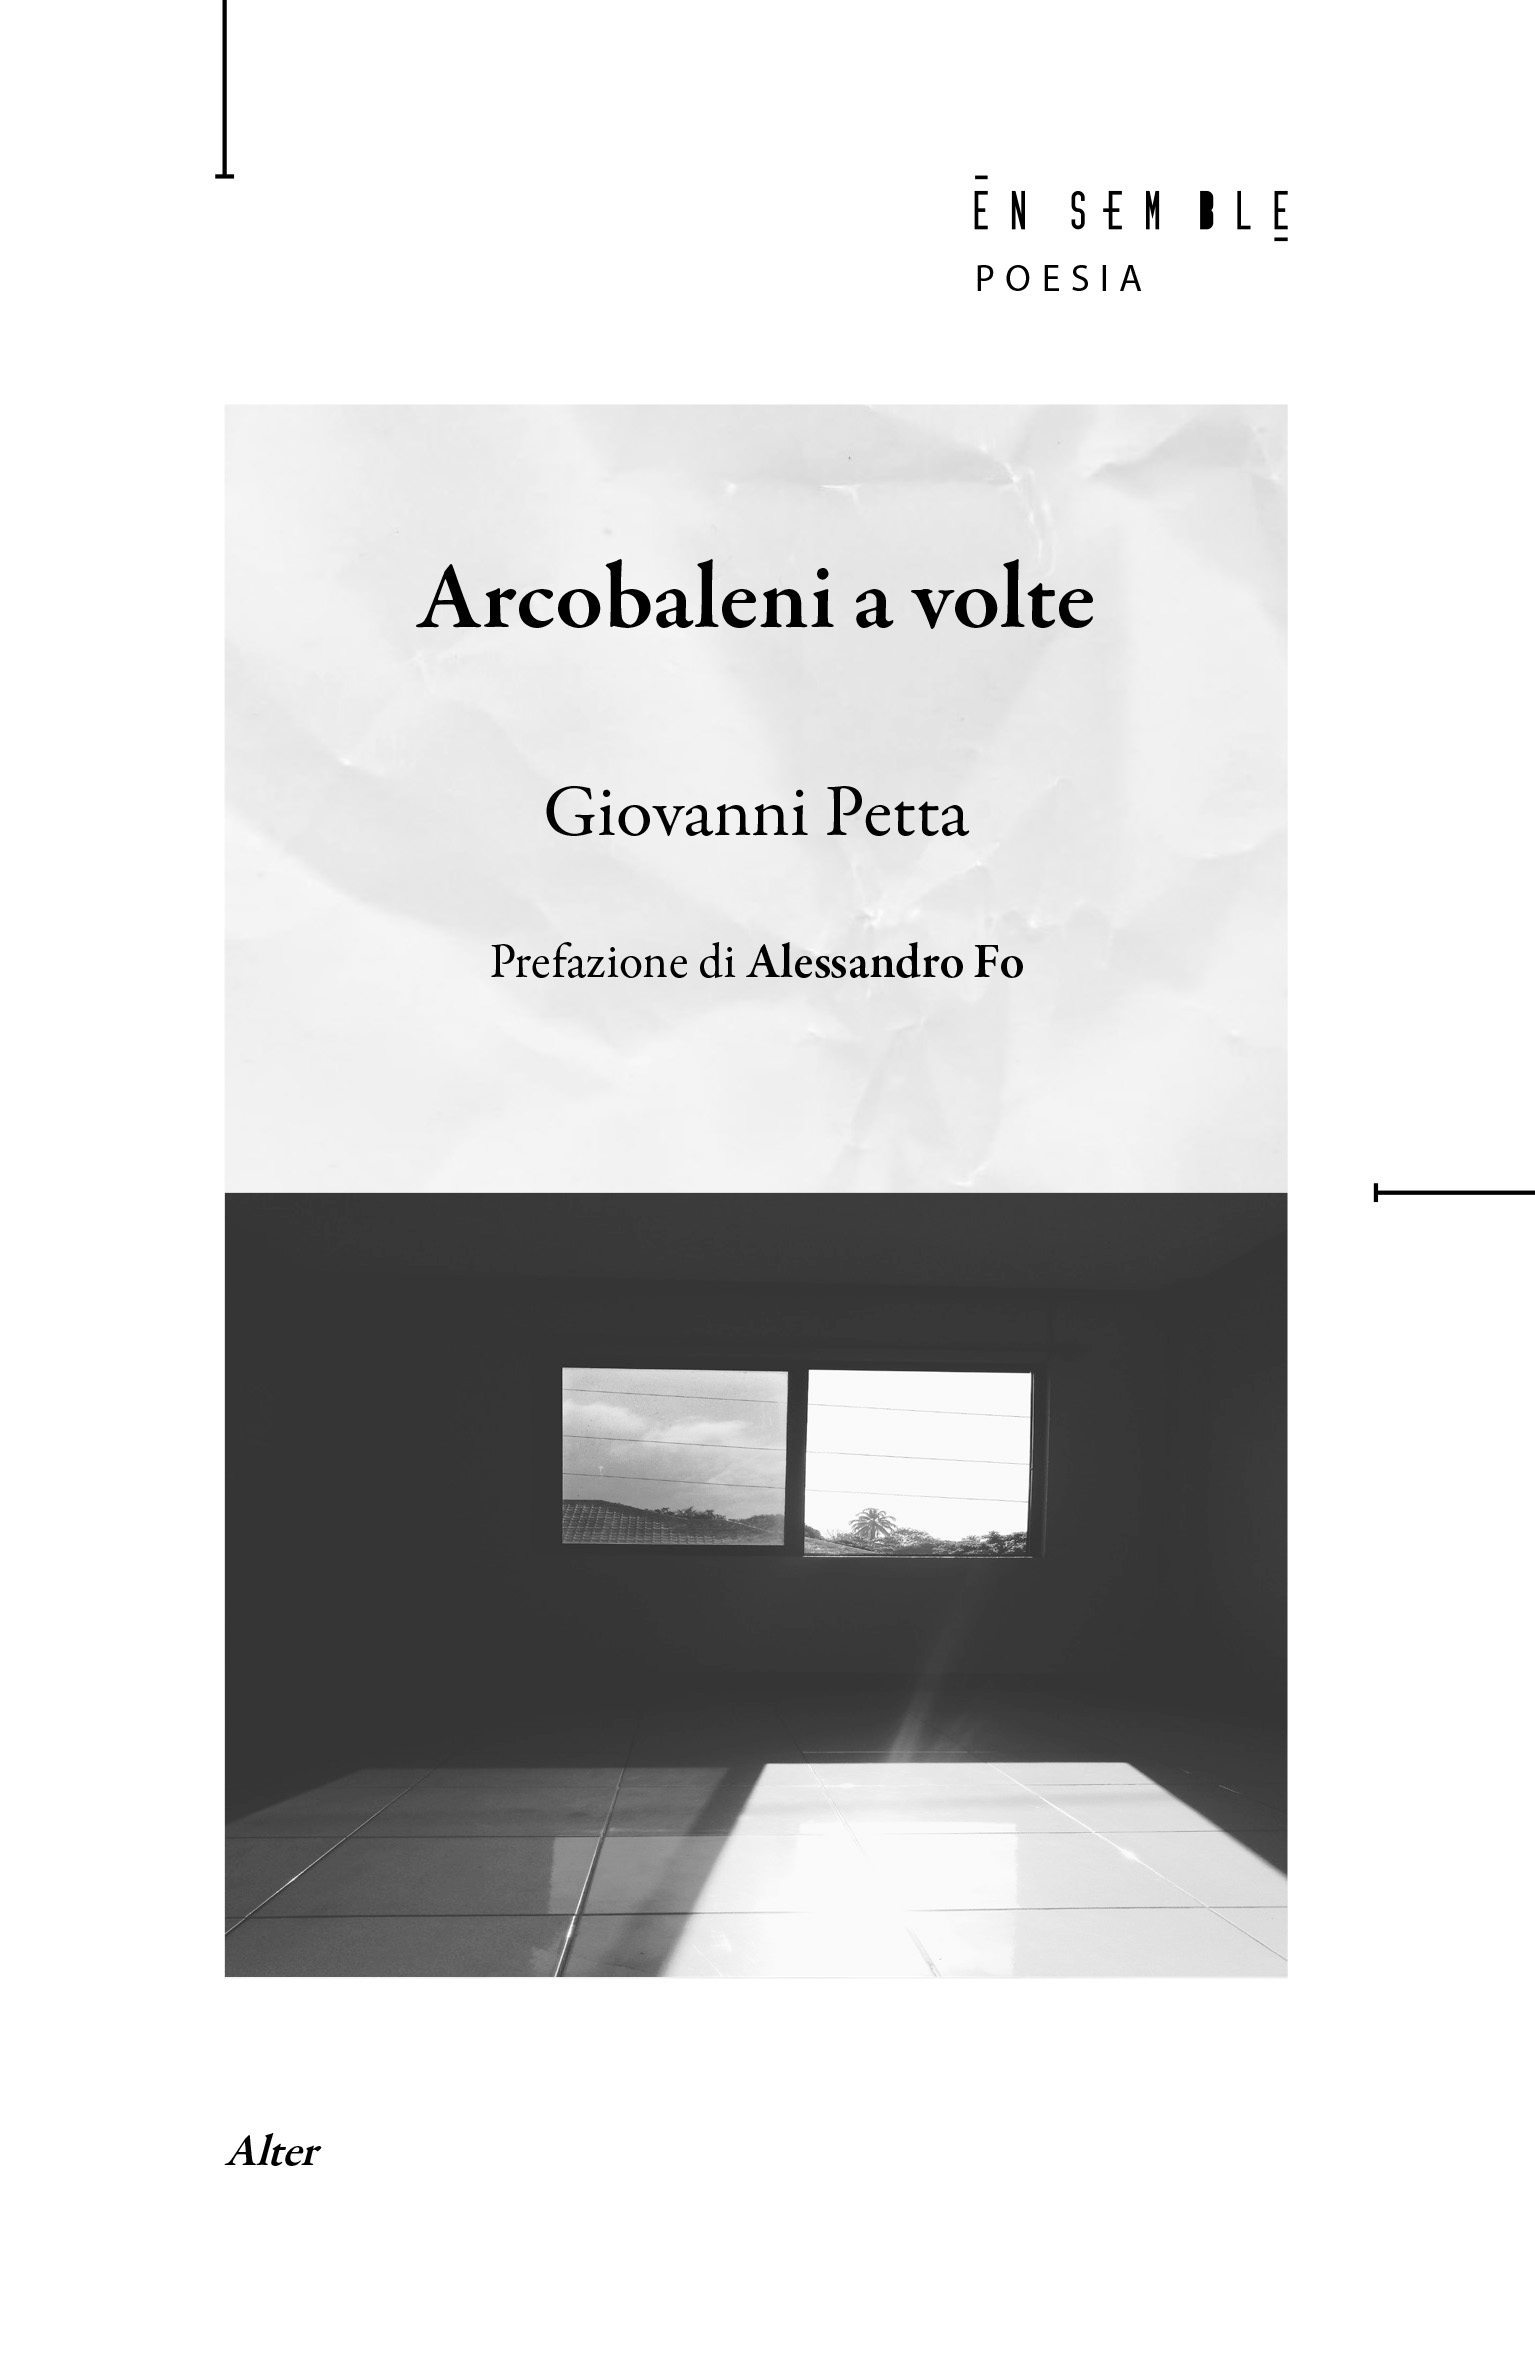 Arcobaleni a volte - Cover -Giovanni Petta